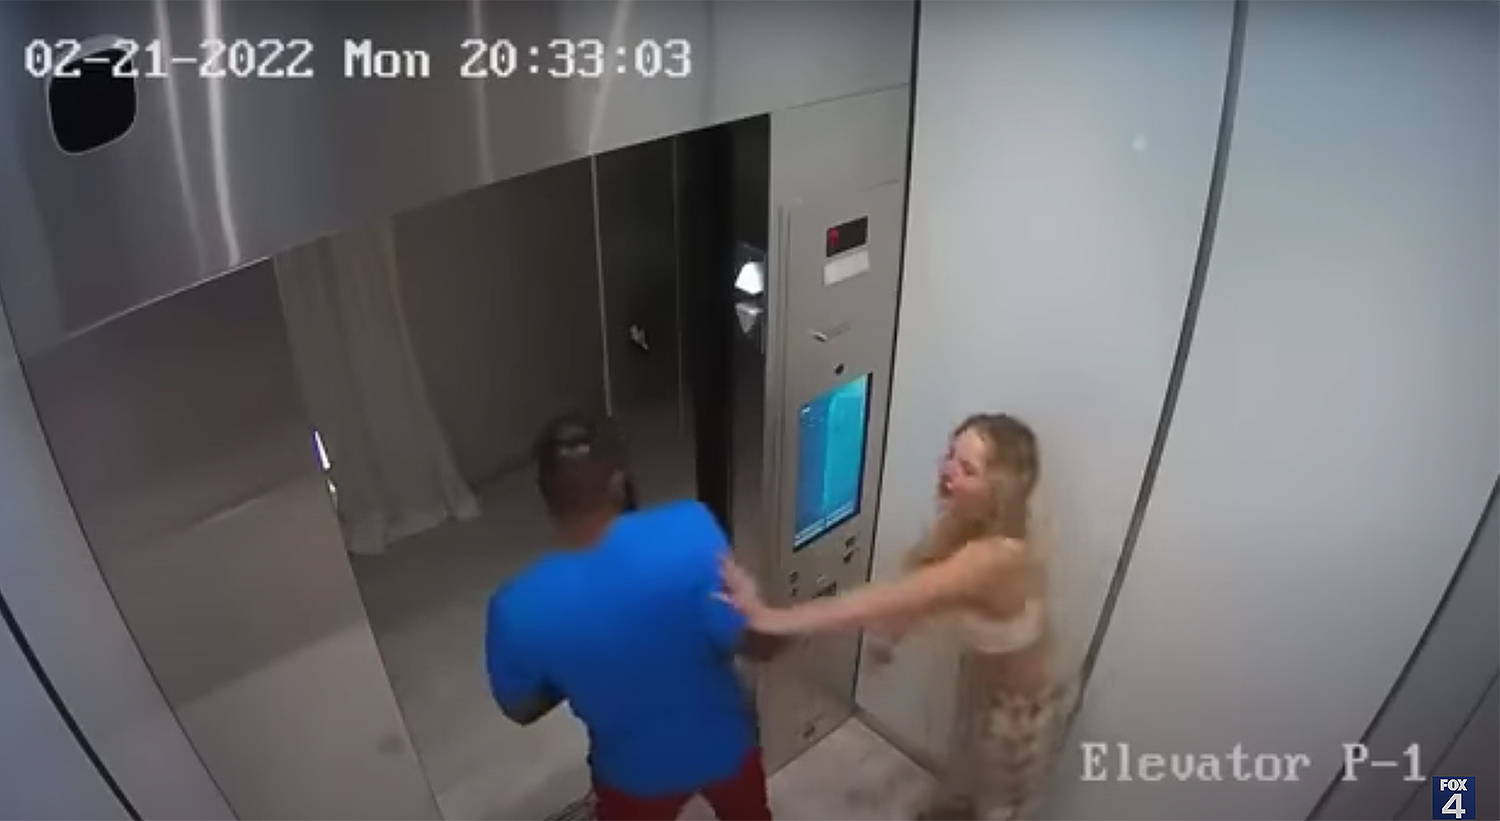 OnlyFans Courtney Clenney attacking her boyfriend in an elevator